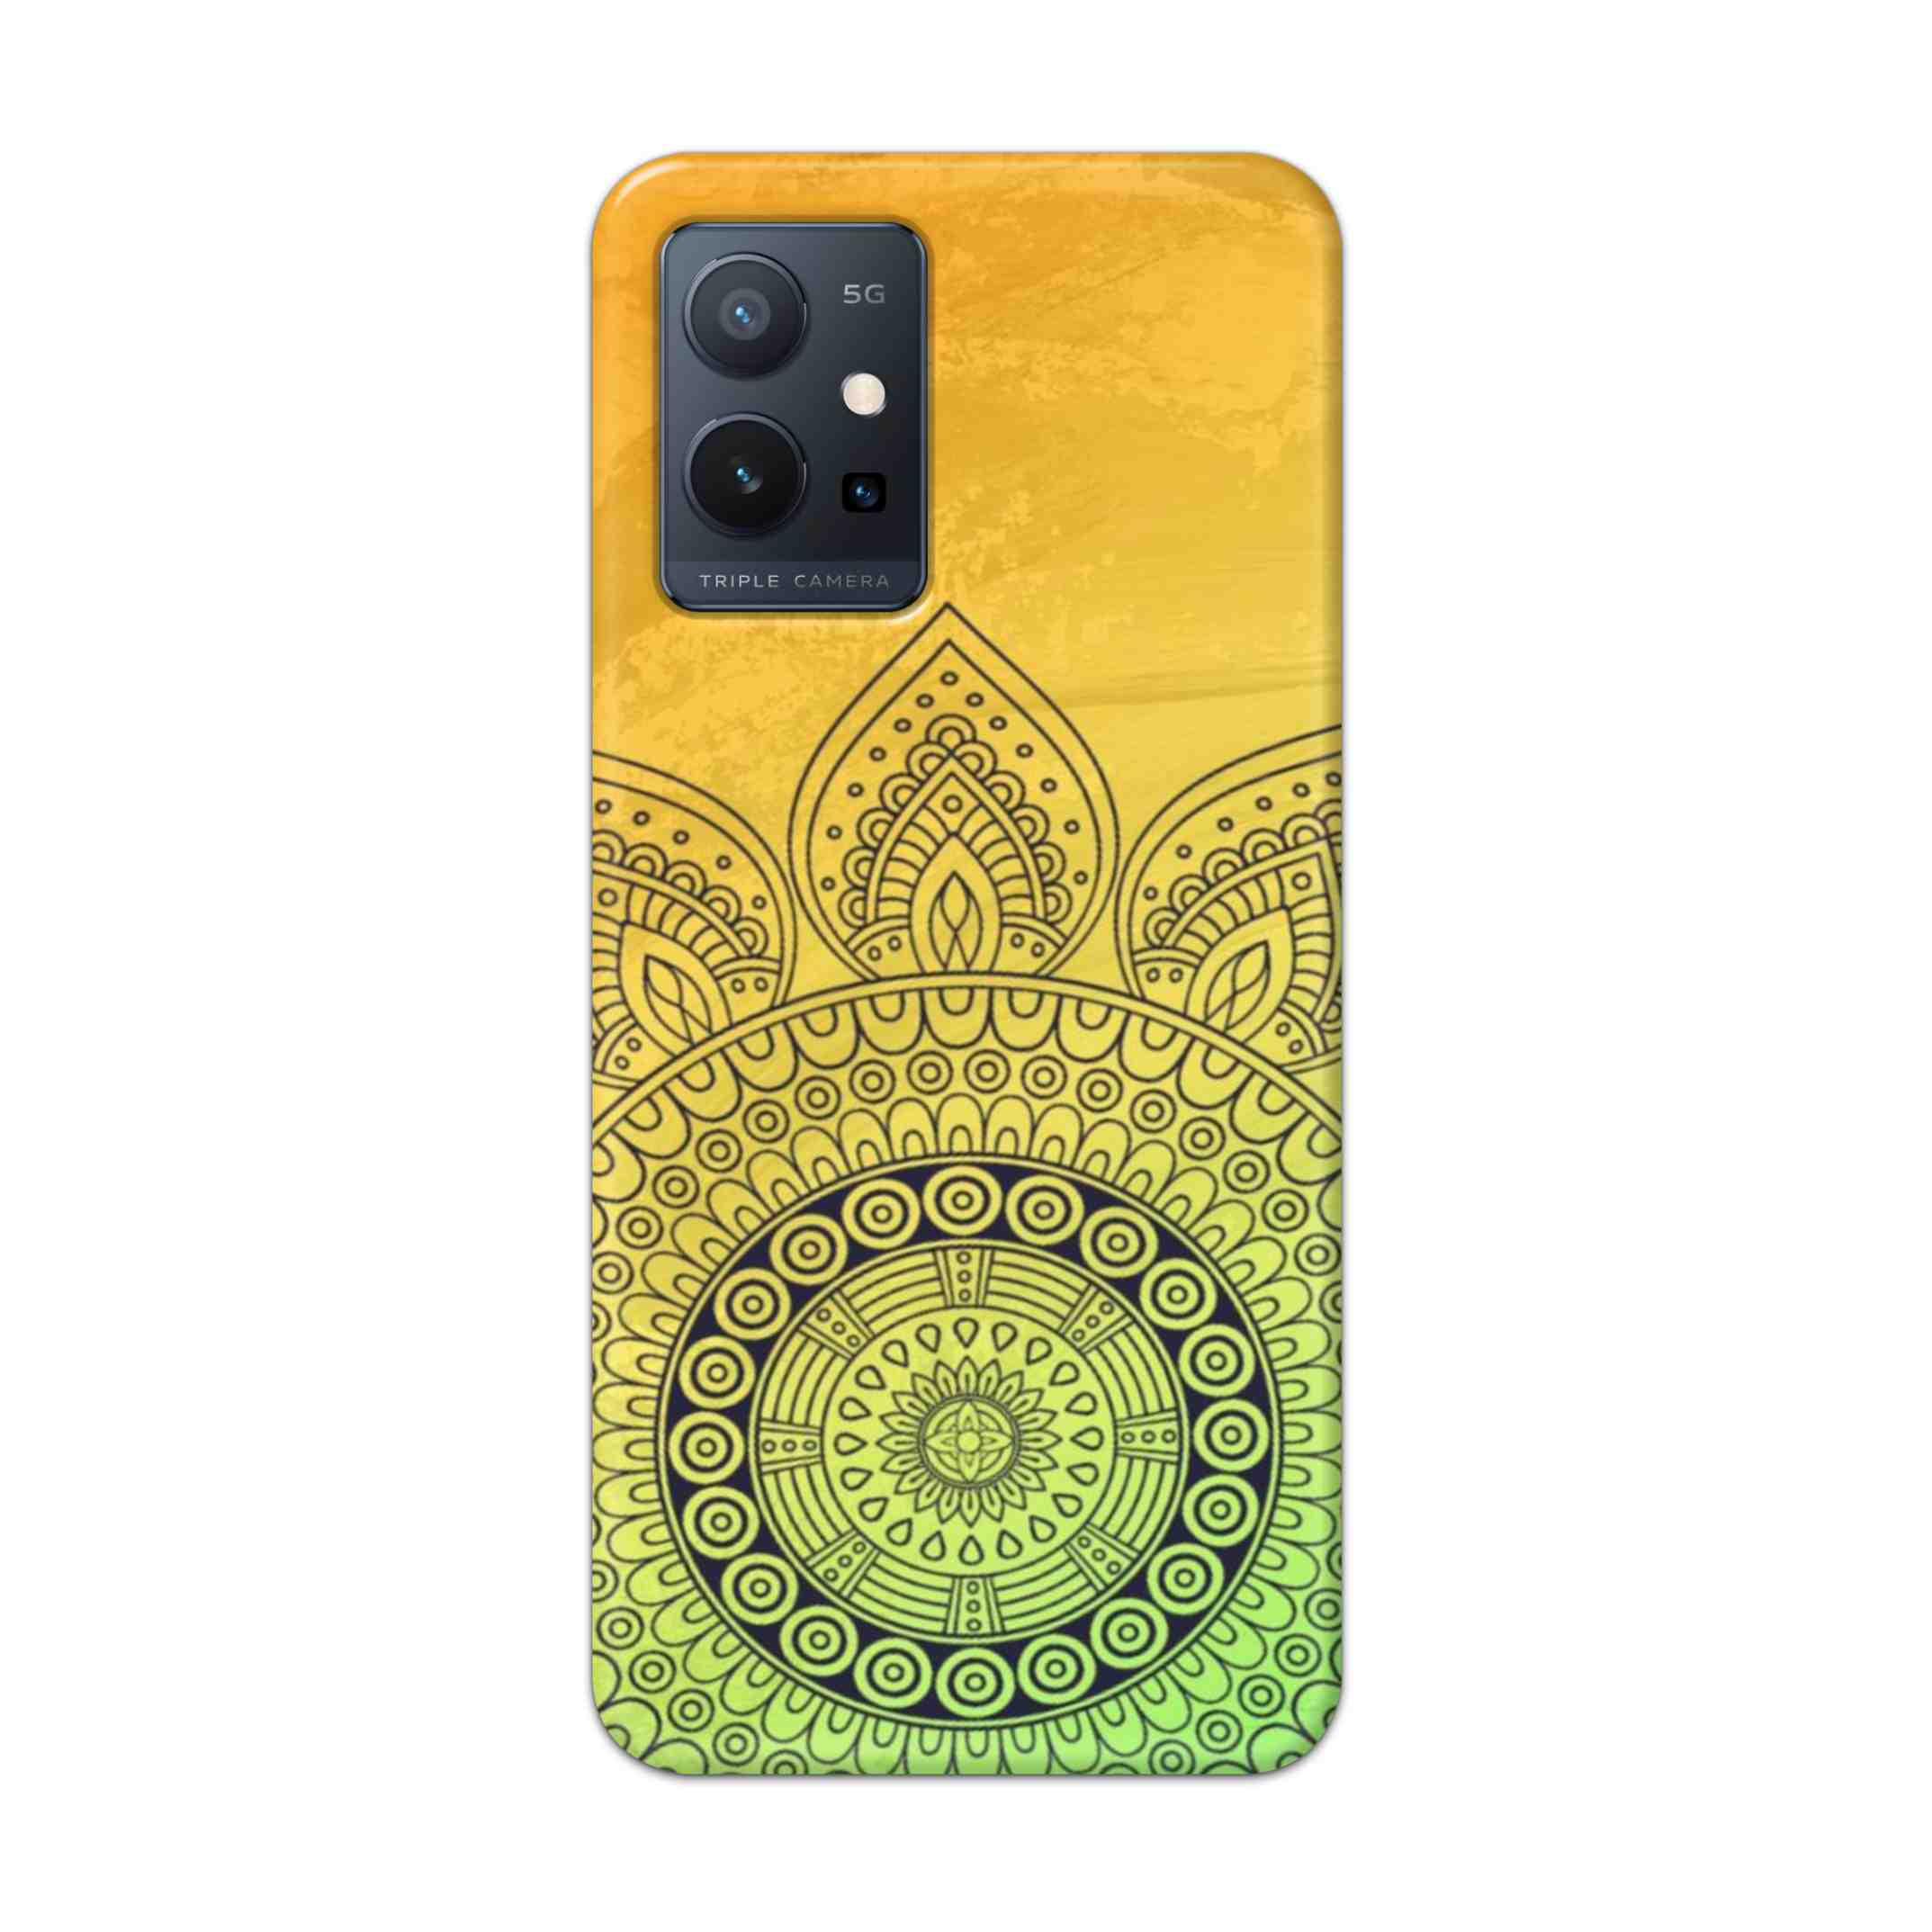 Buy Yellow Rangoli Hard Back Mobile Phone Case Cover For Vivo T1 5G Online